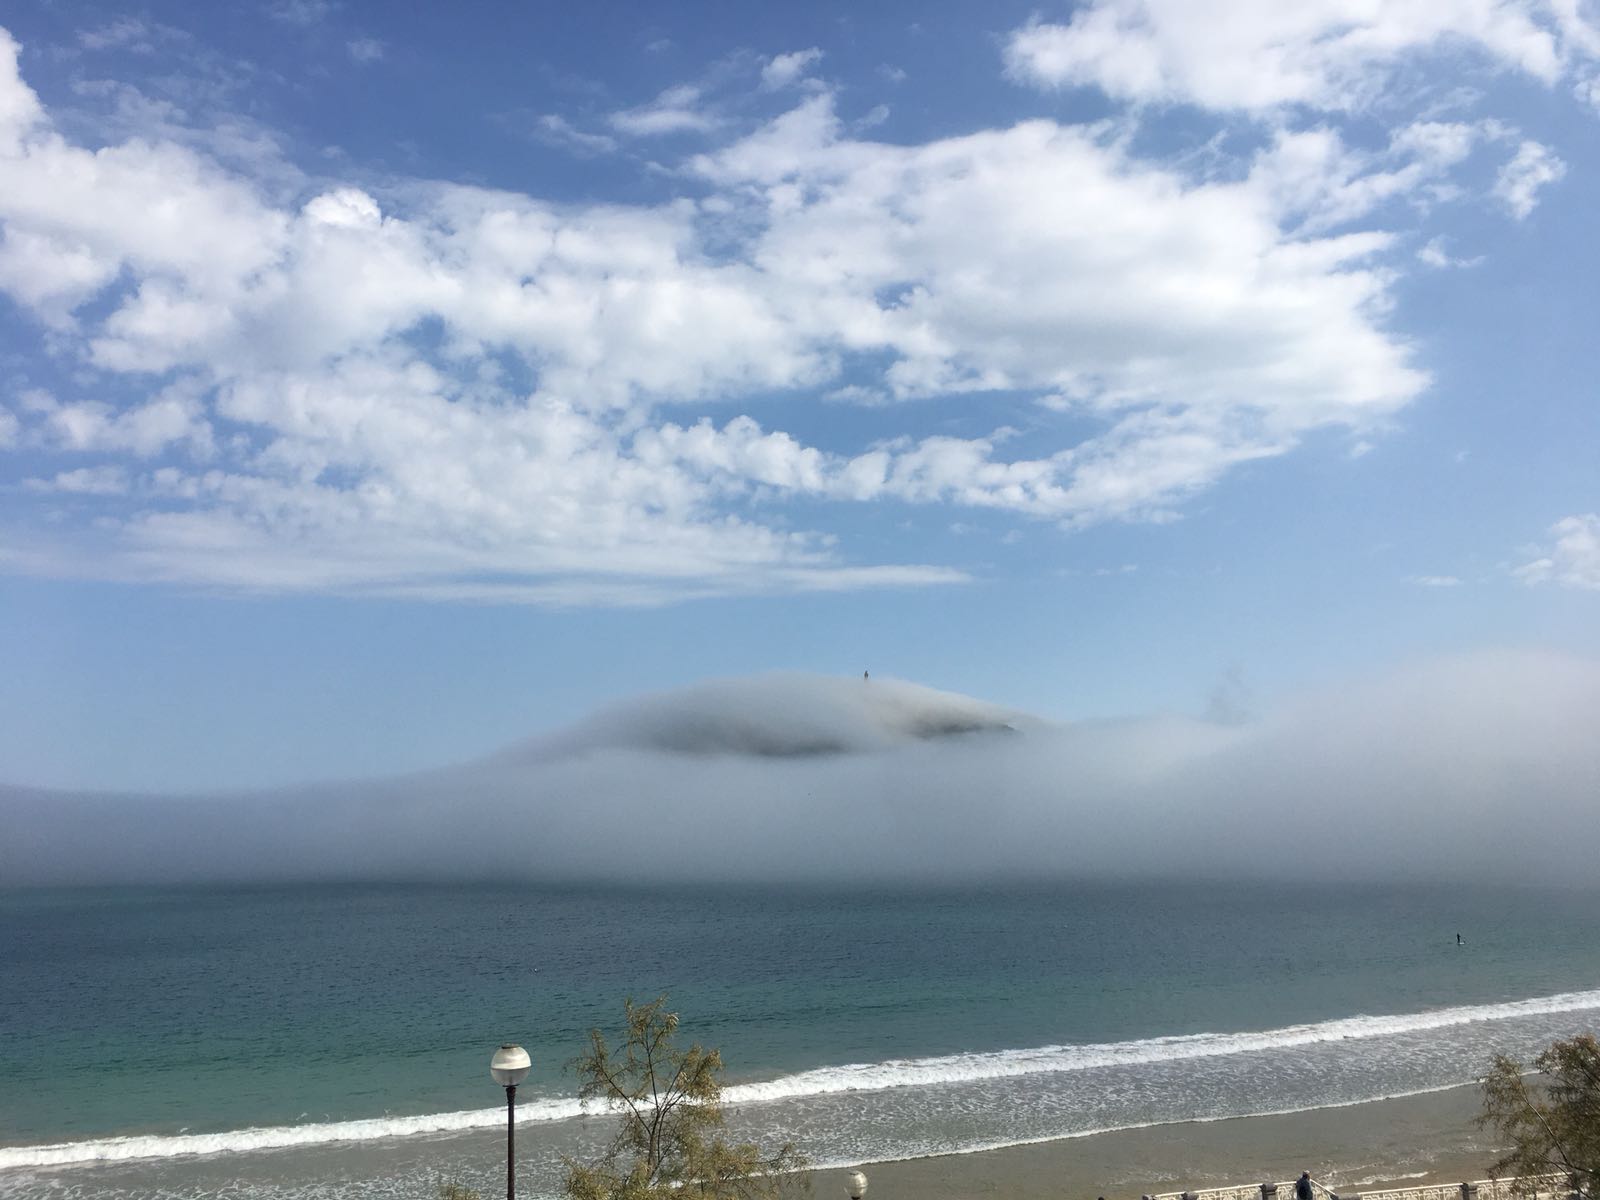 La densa niebla que ha aparecido esta mañana ha dejado espectaculares imágenes de la ciudad de San Sebastián